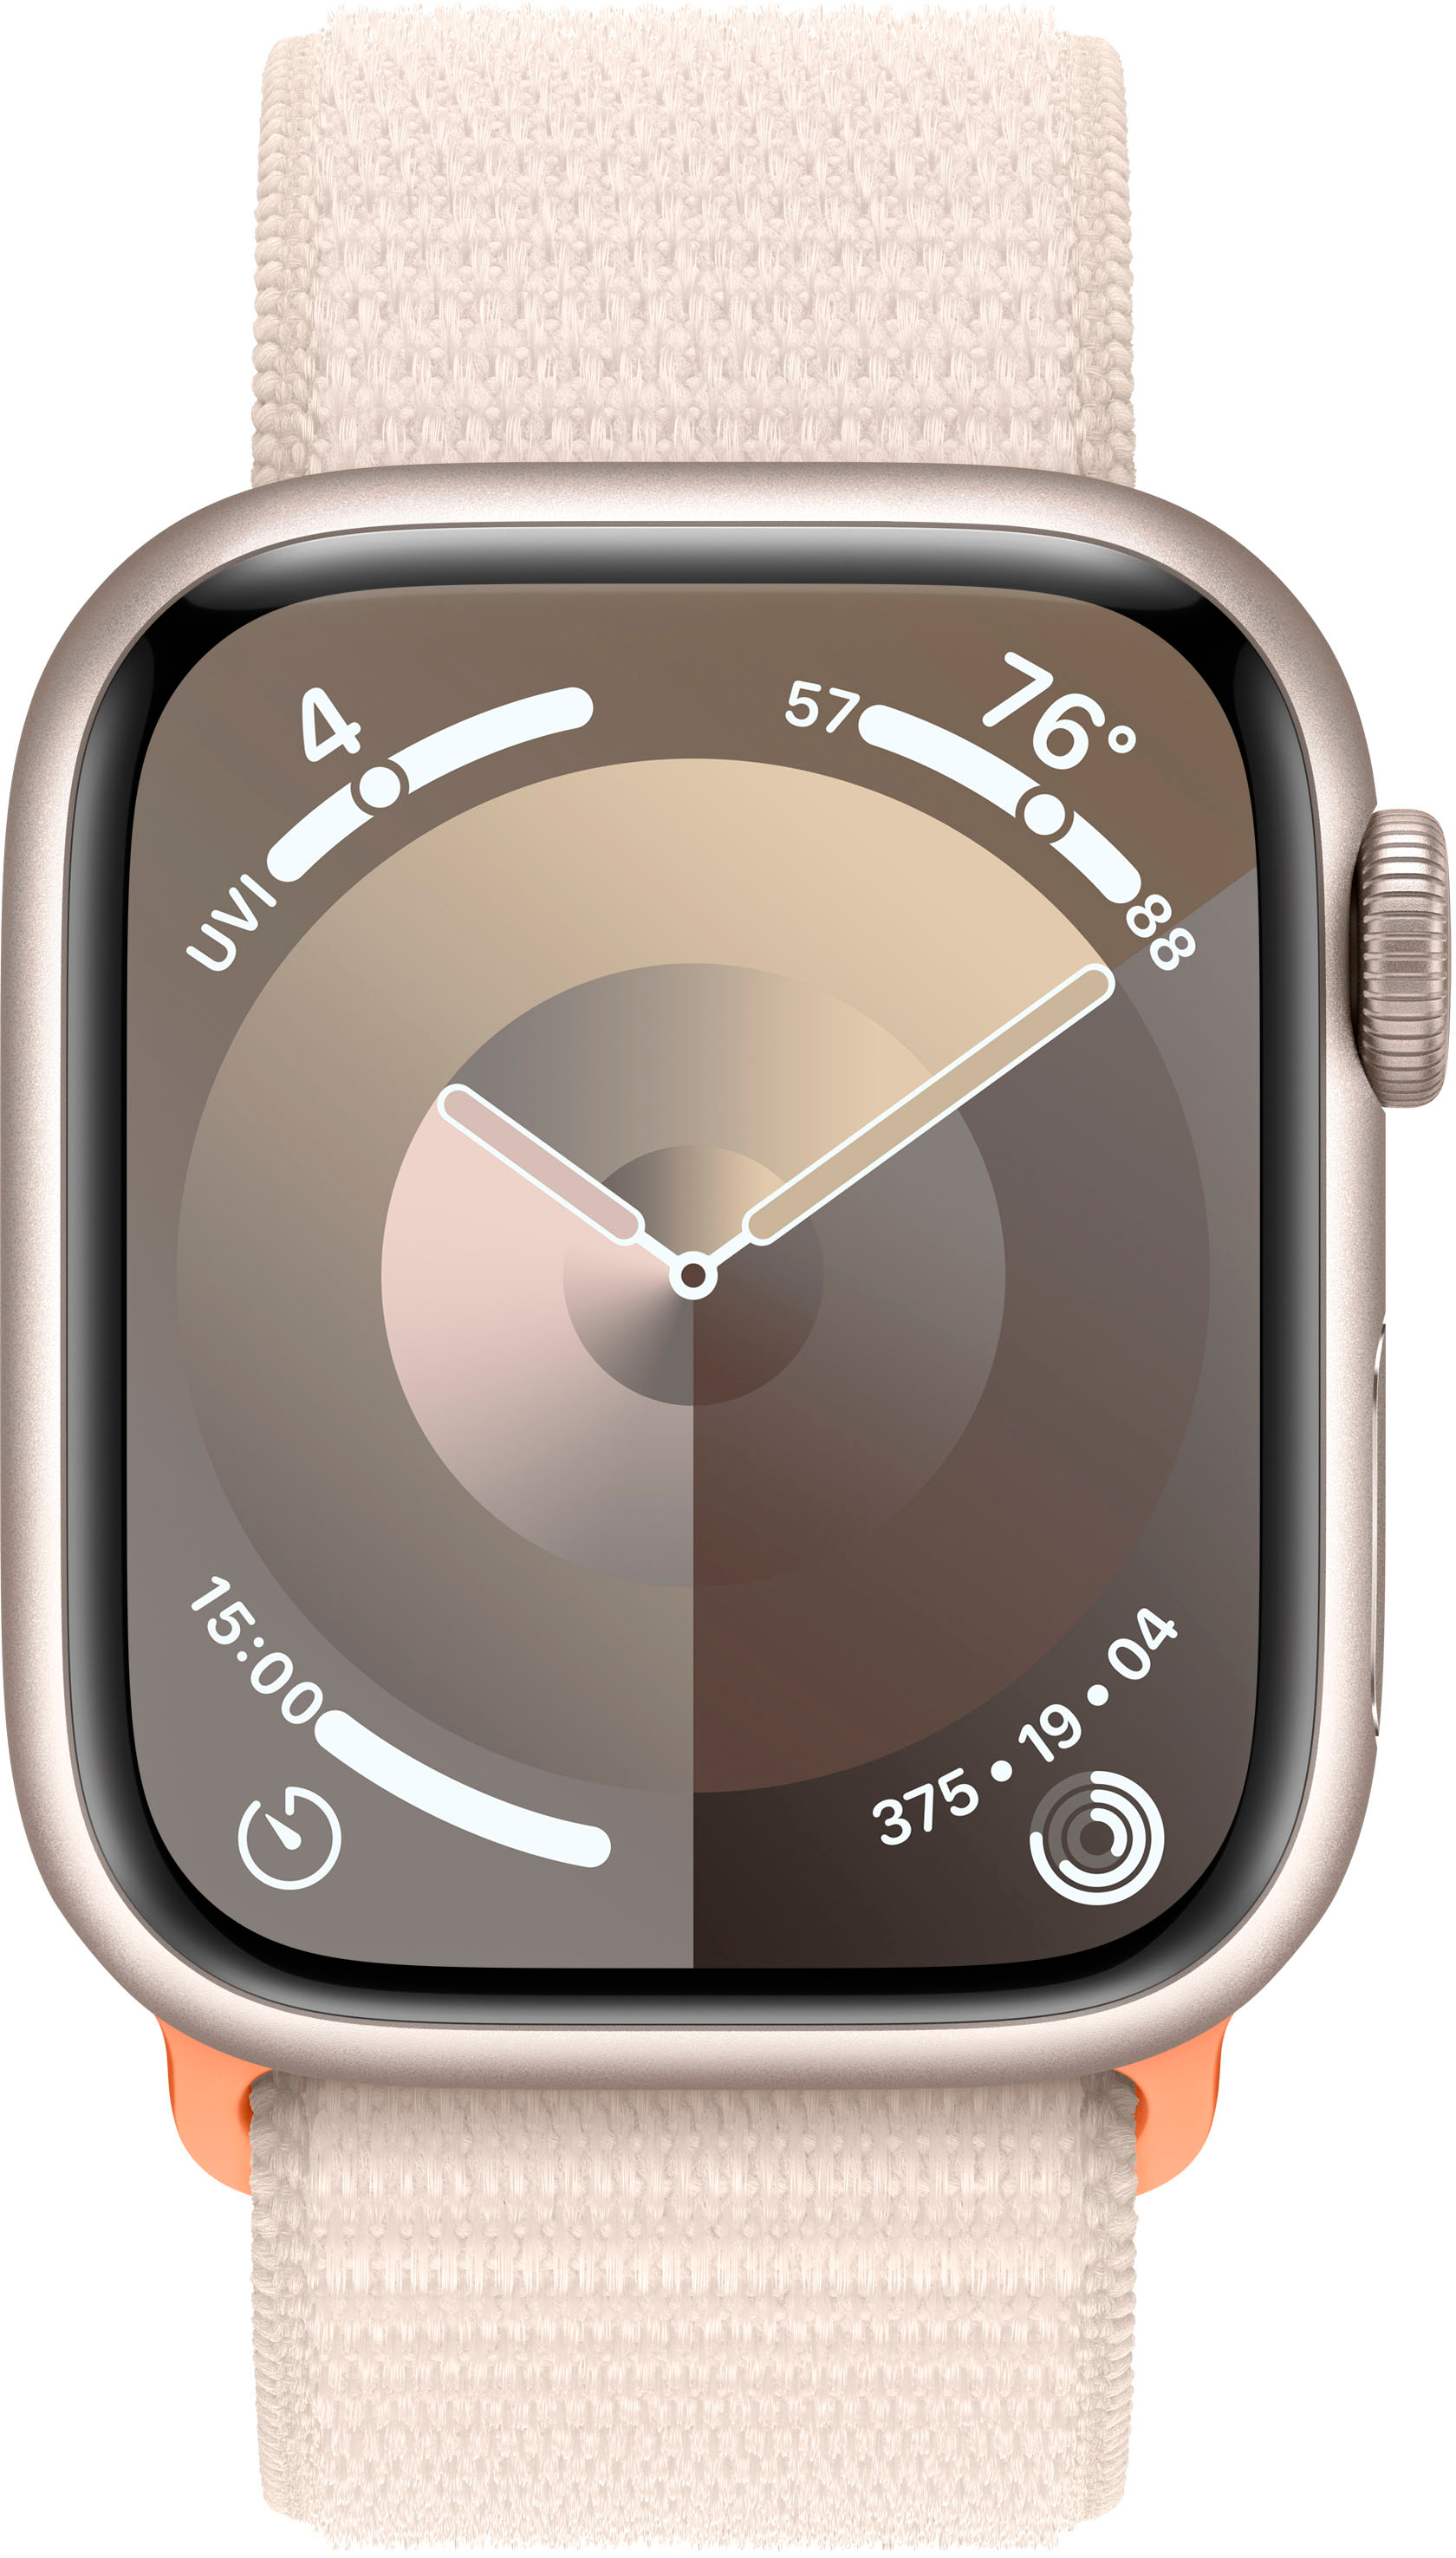 Starlight (GPS MRHQ3LL/A Loop Case Aluminum with Cellular) + - Sport Starlight Watch 9 Apple Series 41mm Starlight Best Buy